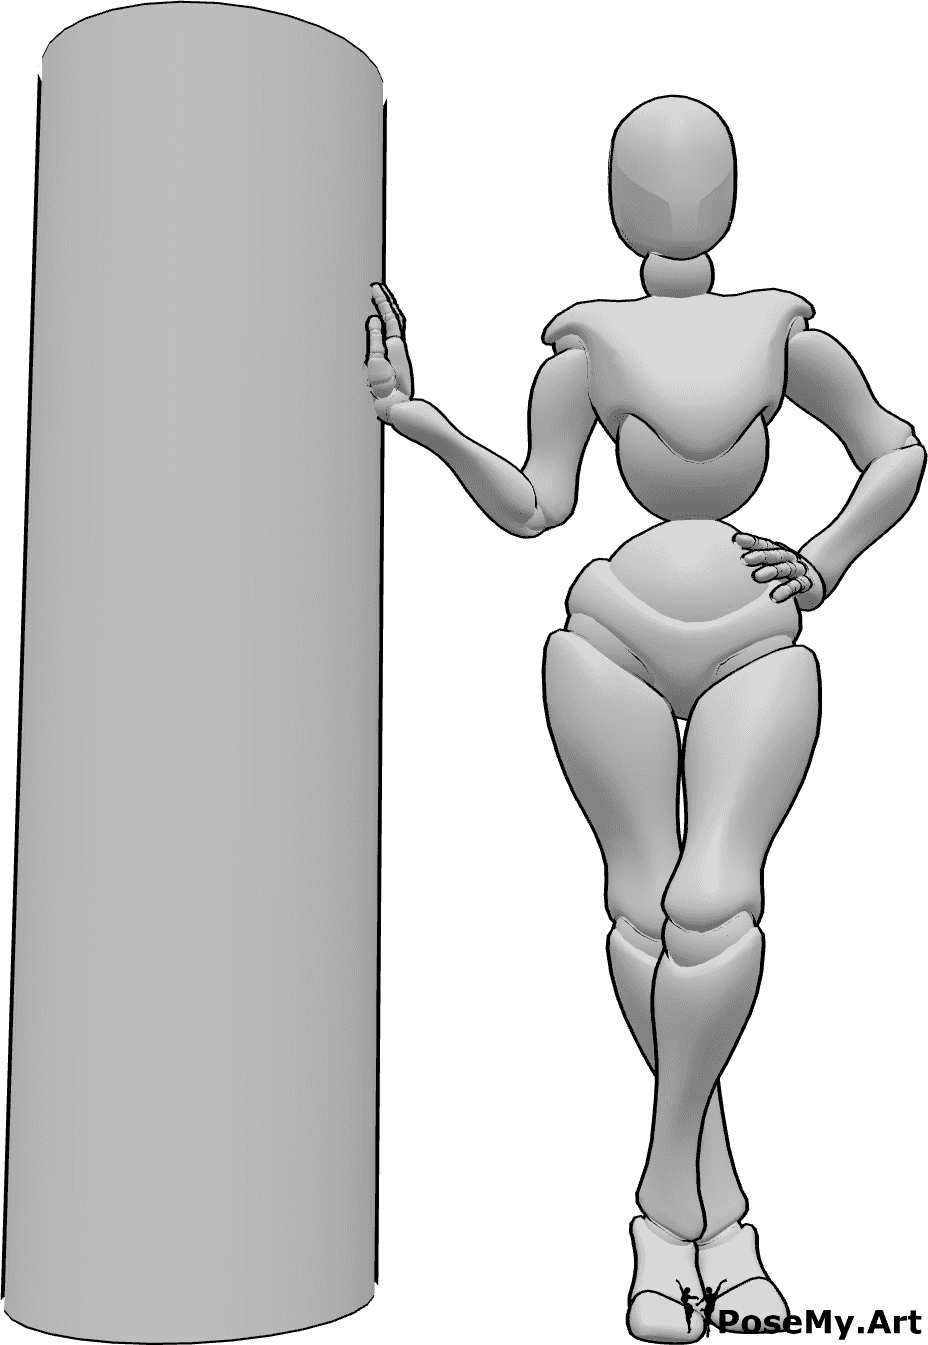 Referência de poses- Pose de mão inclinada para fotografia - Mulher de pé e encostada a um pilar, a posar para uma fotografia, segurando as mãos com elegância